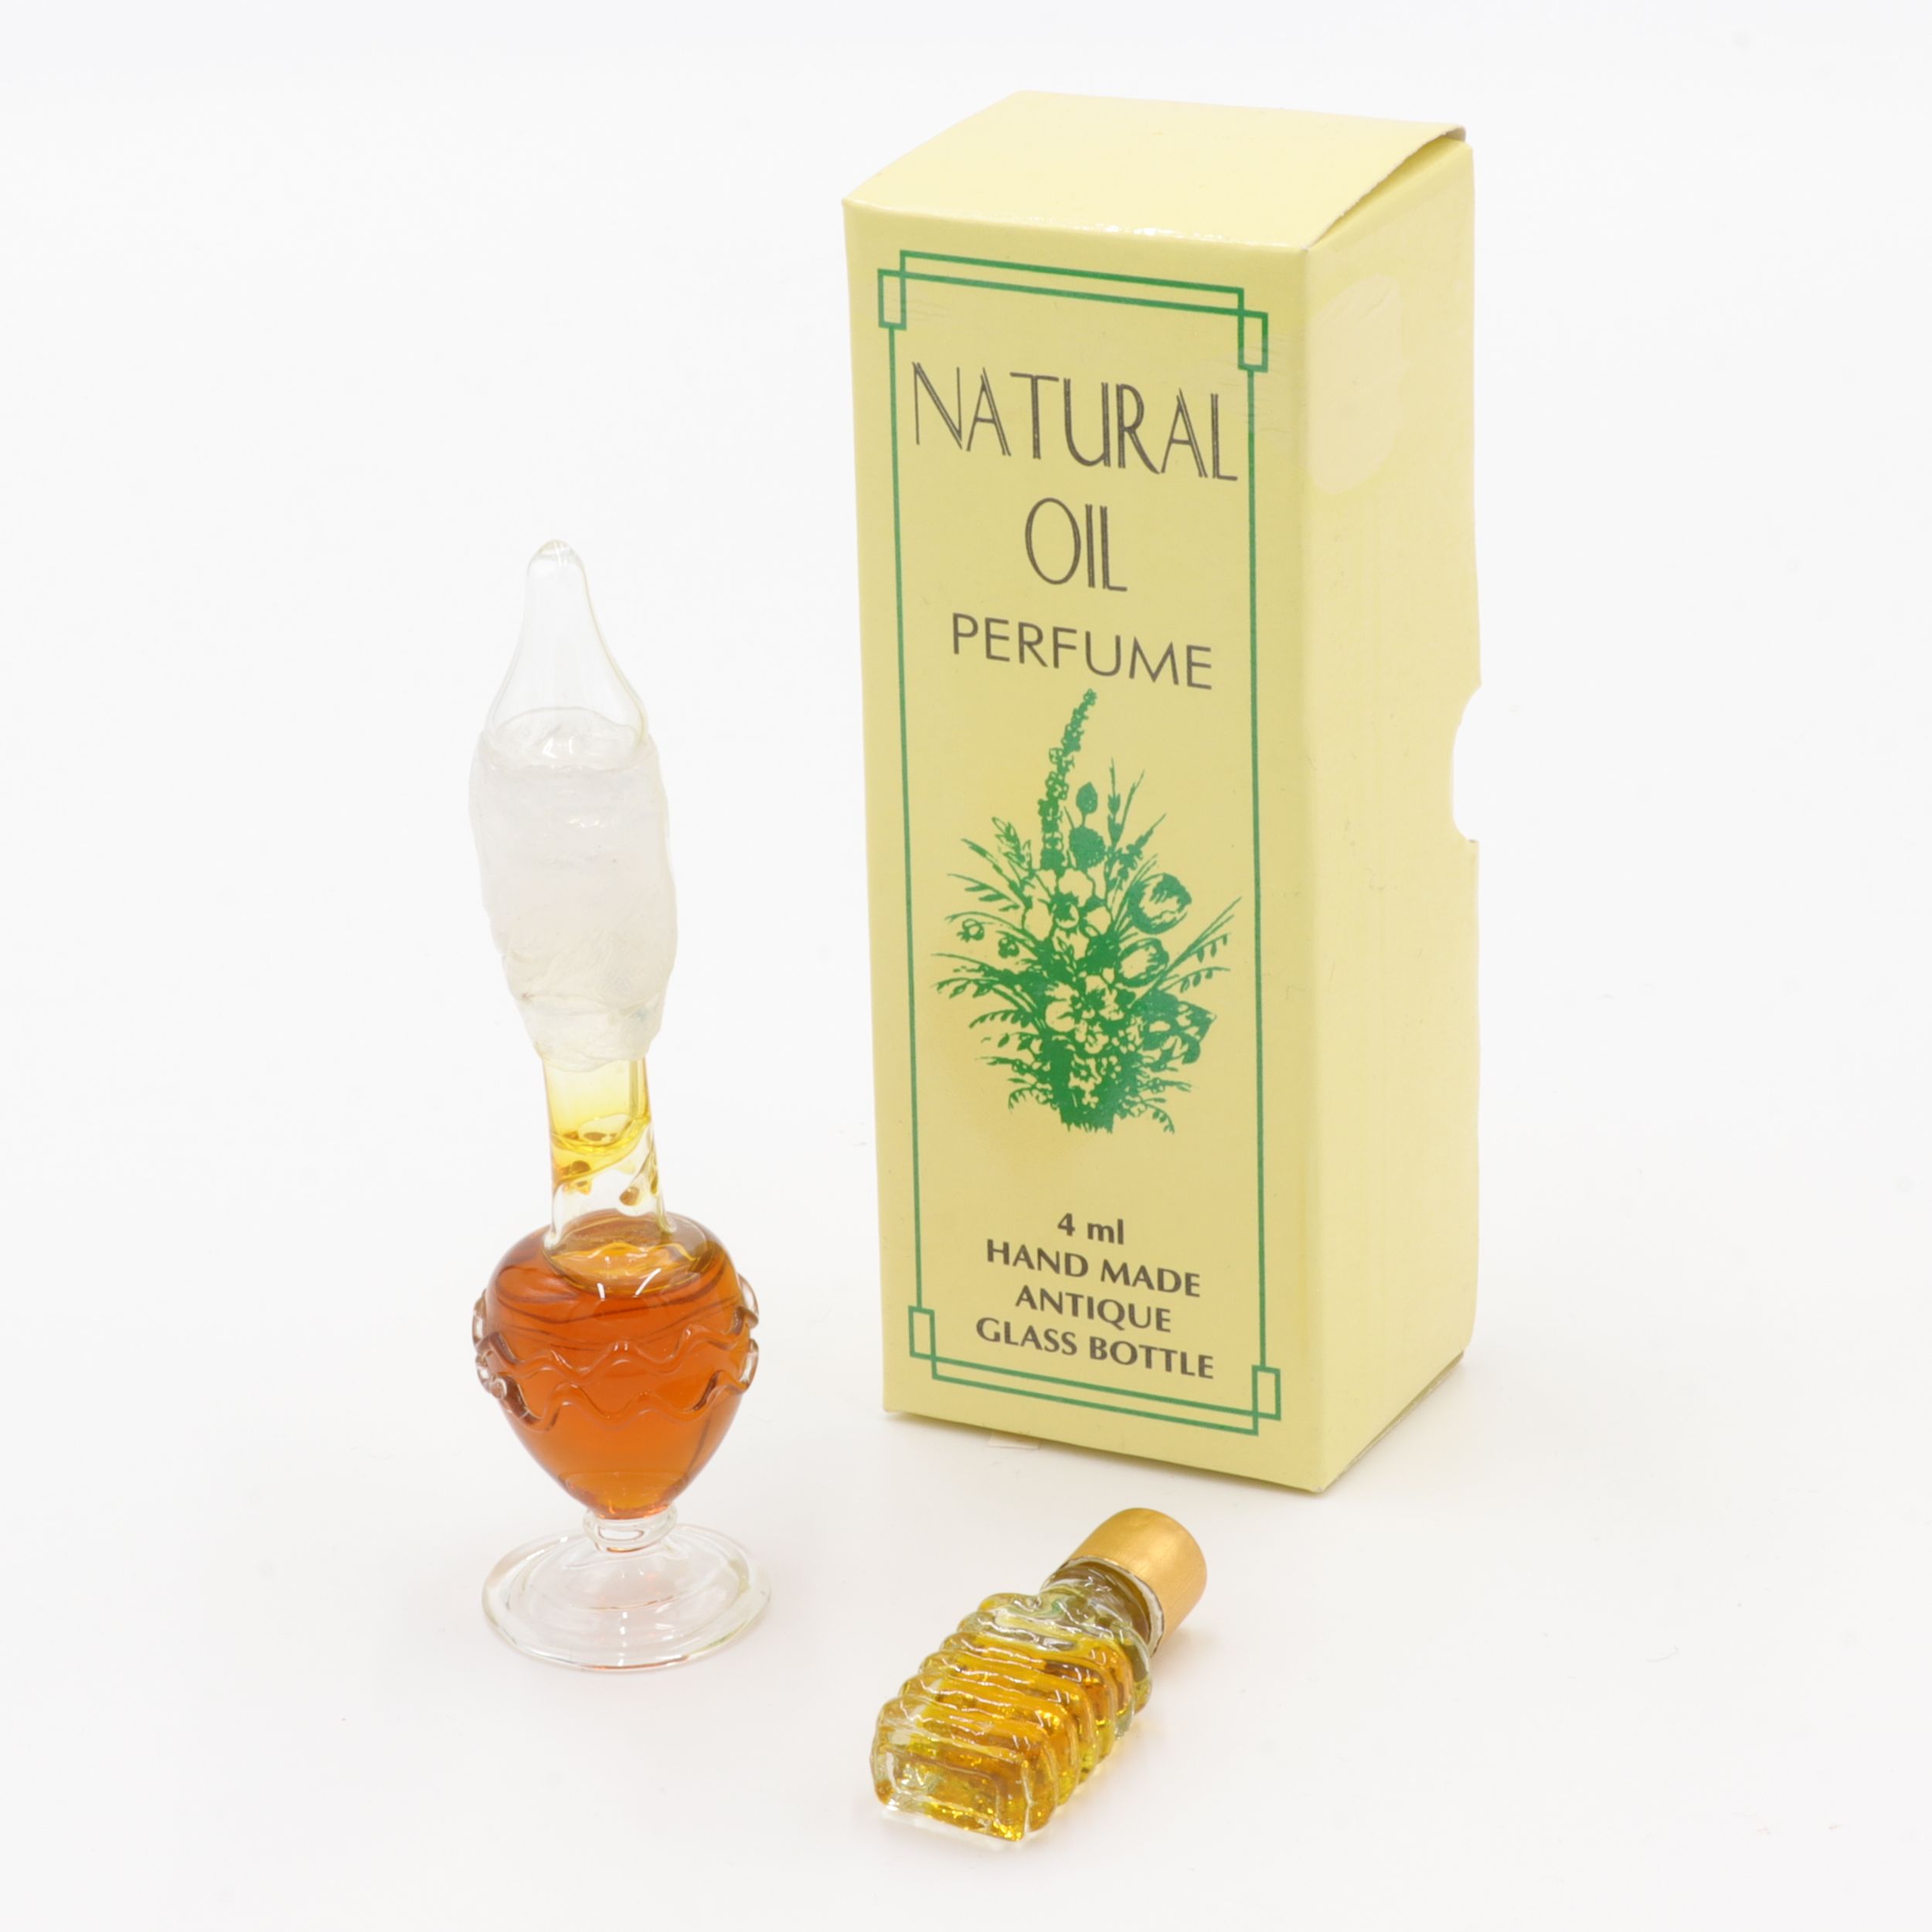 Natürliches Parfüm Öl - Antik-Flakon - Patchouli - feiner Duft wie eine Reise nach Indien - aus feinsten indischen Zuten - in handgemachtem Flakon